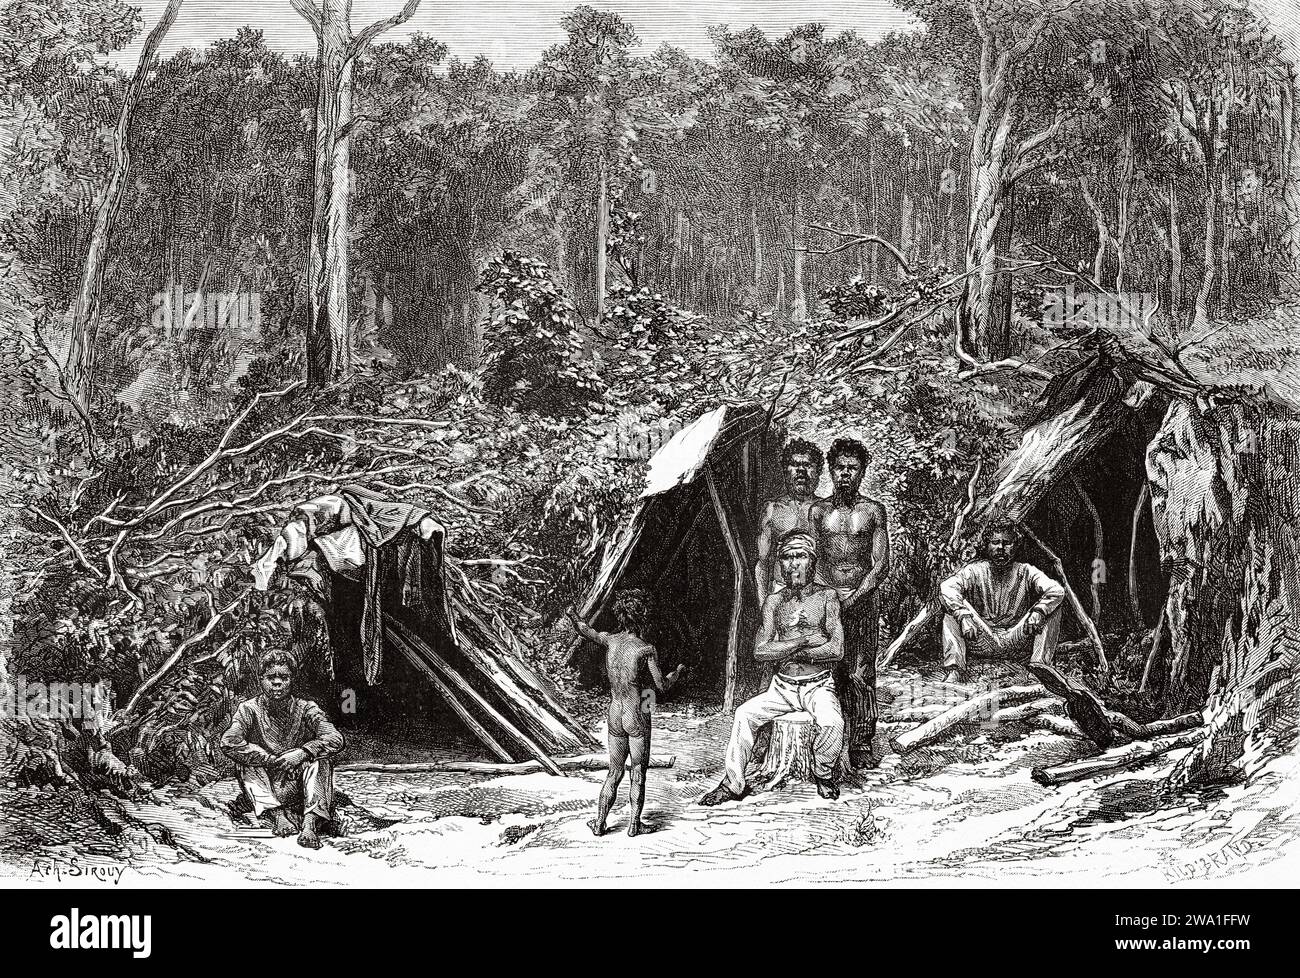 Campo maschile e femminile aborigeno australiano. Queensland, Australia. Sei mesi in Australia 1878 da Desire Charnay (1828 - 1915) incisione del vecchio XIX secolo da le Tour du Monde 1880 Foto Stock